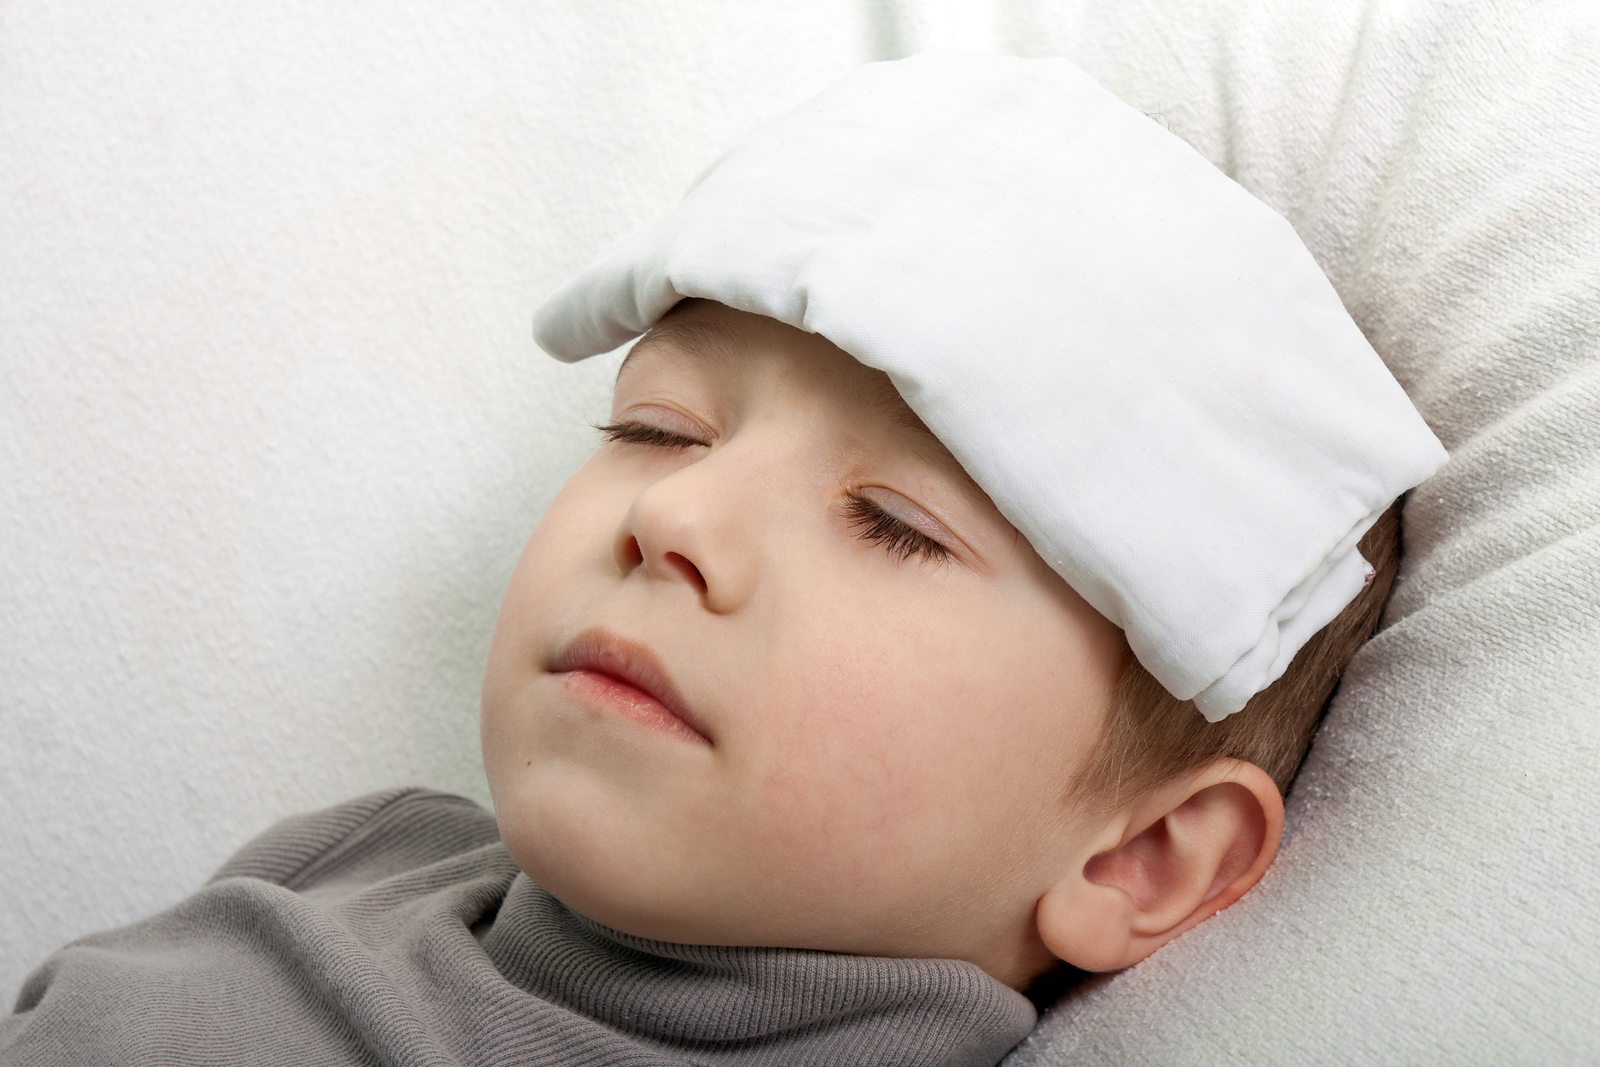   Trẻ em dễ bị cúm và dễ gây biến chứng do hệ miễn dịch đang phát triển (Ảnh minh họa)  